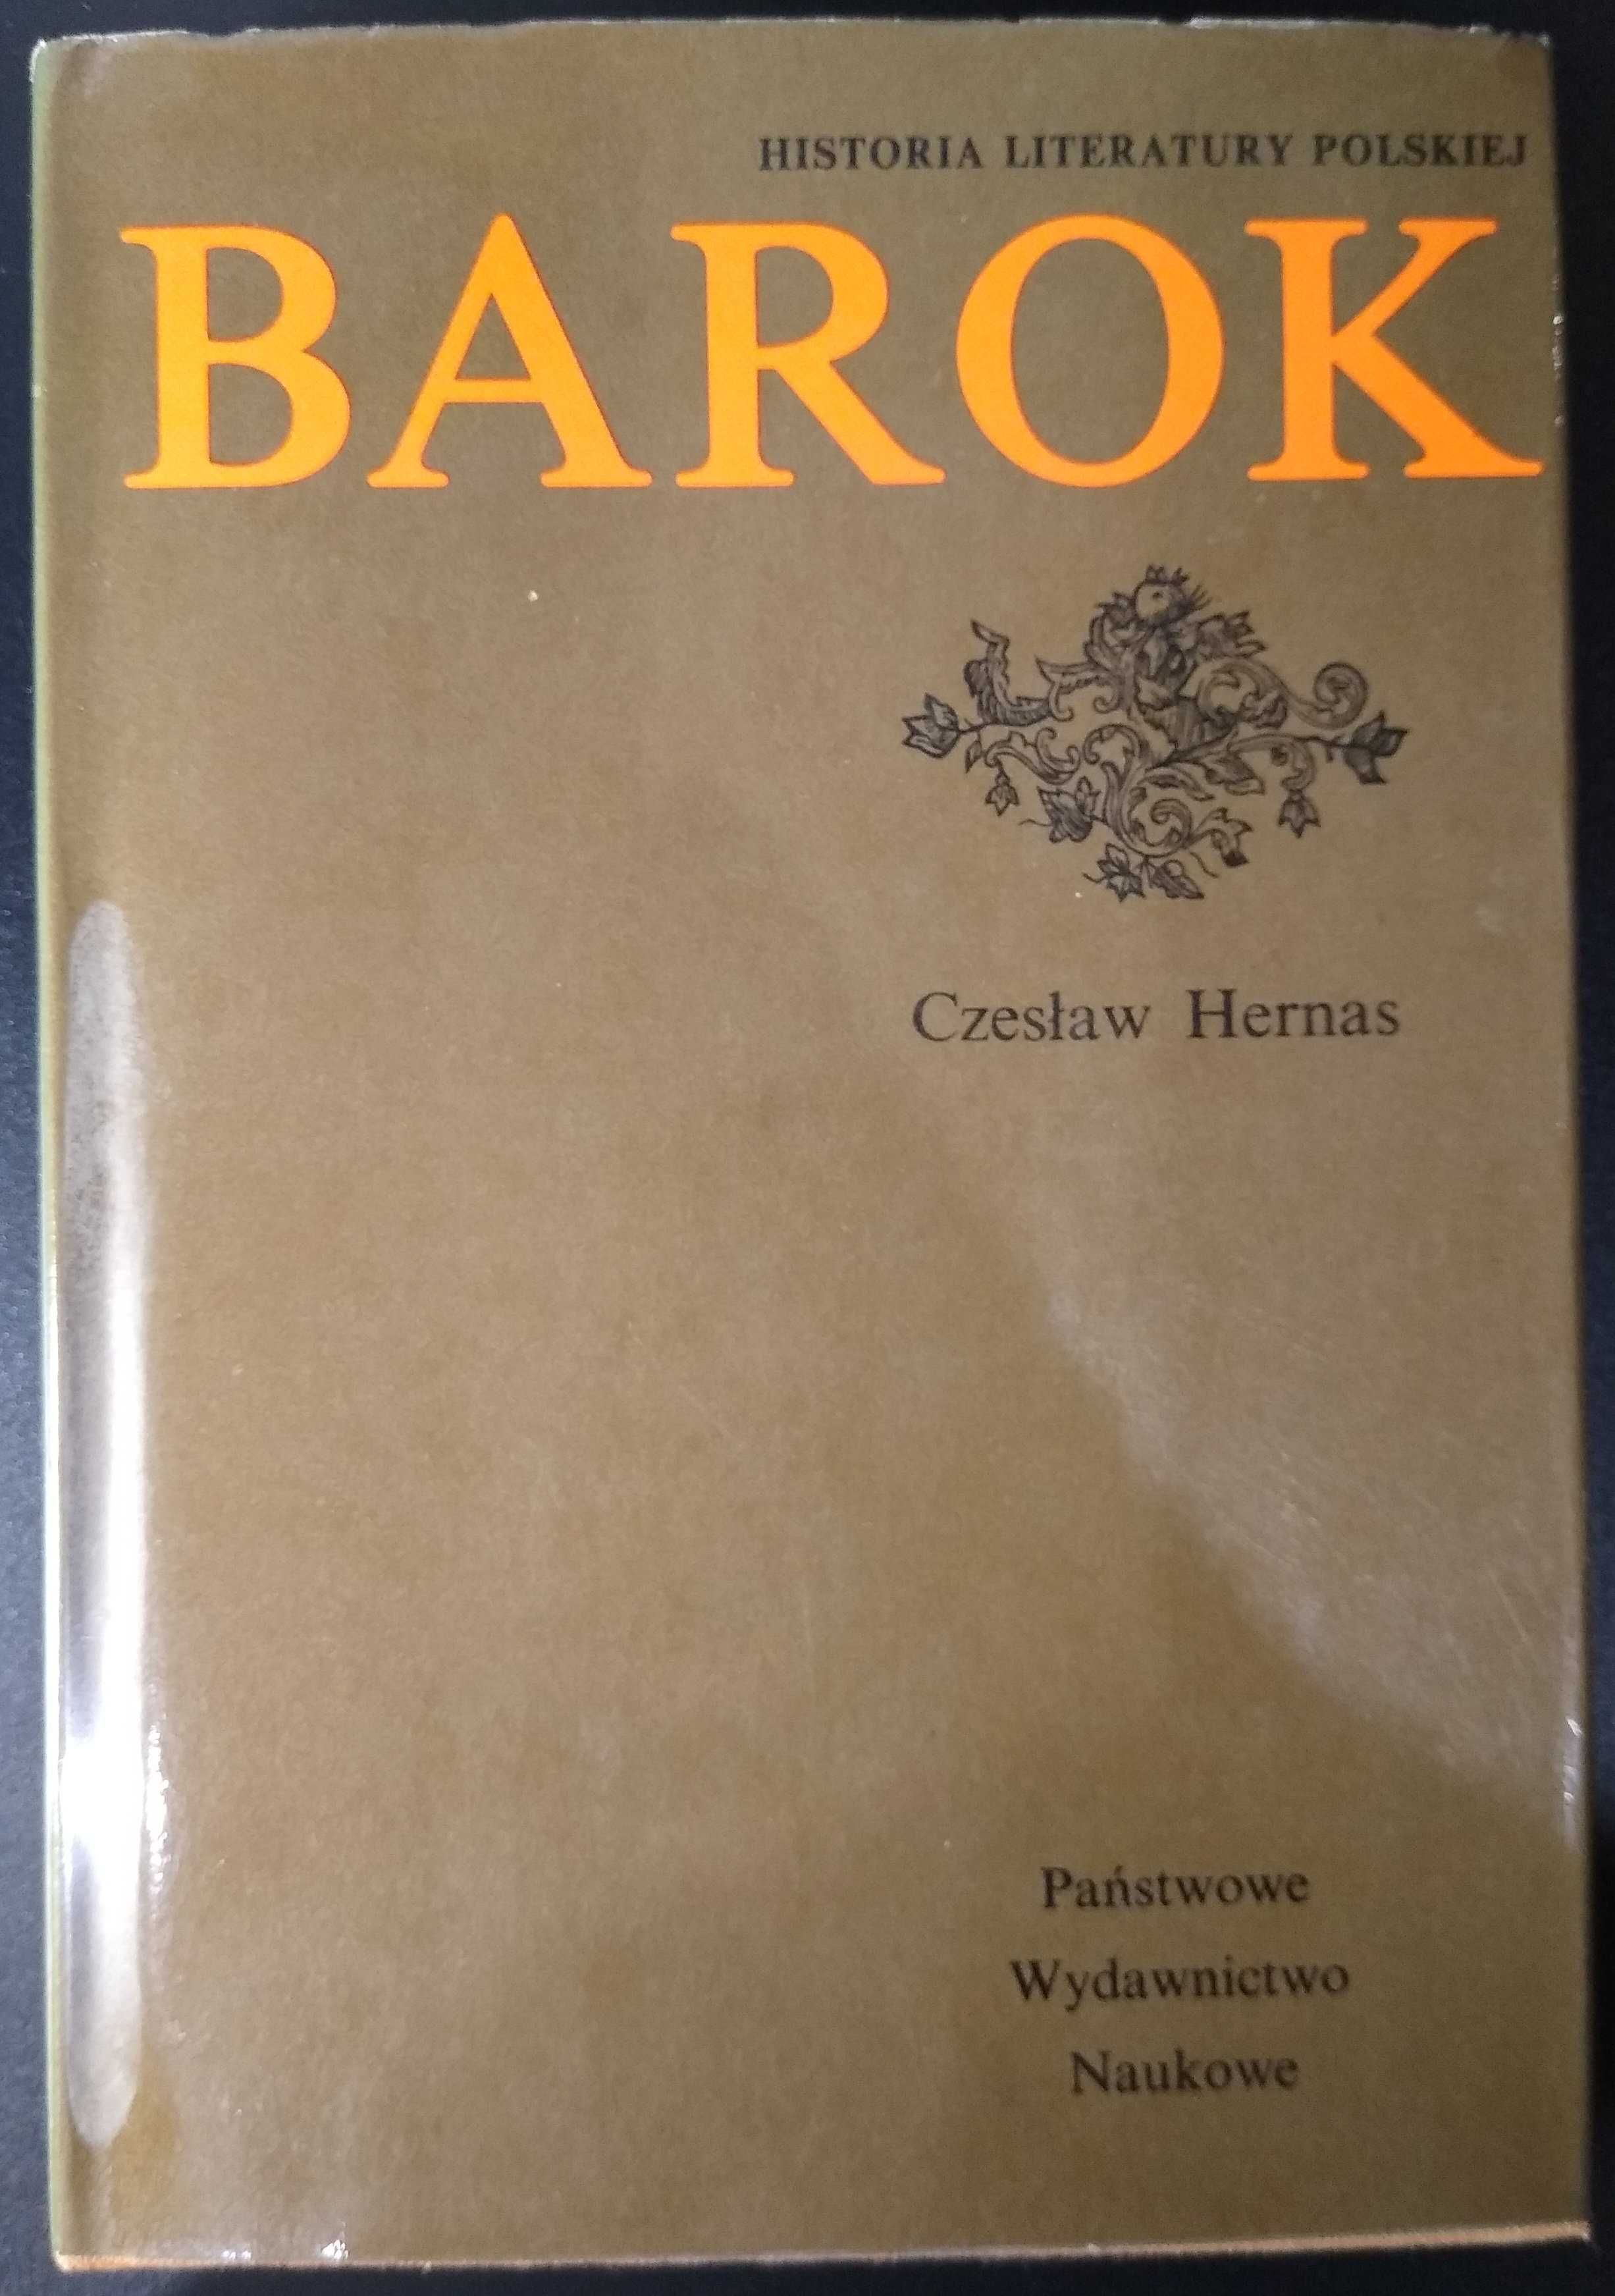 Książka Czesław Hernas – Historia literatury polskiej. Barok